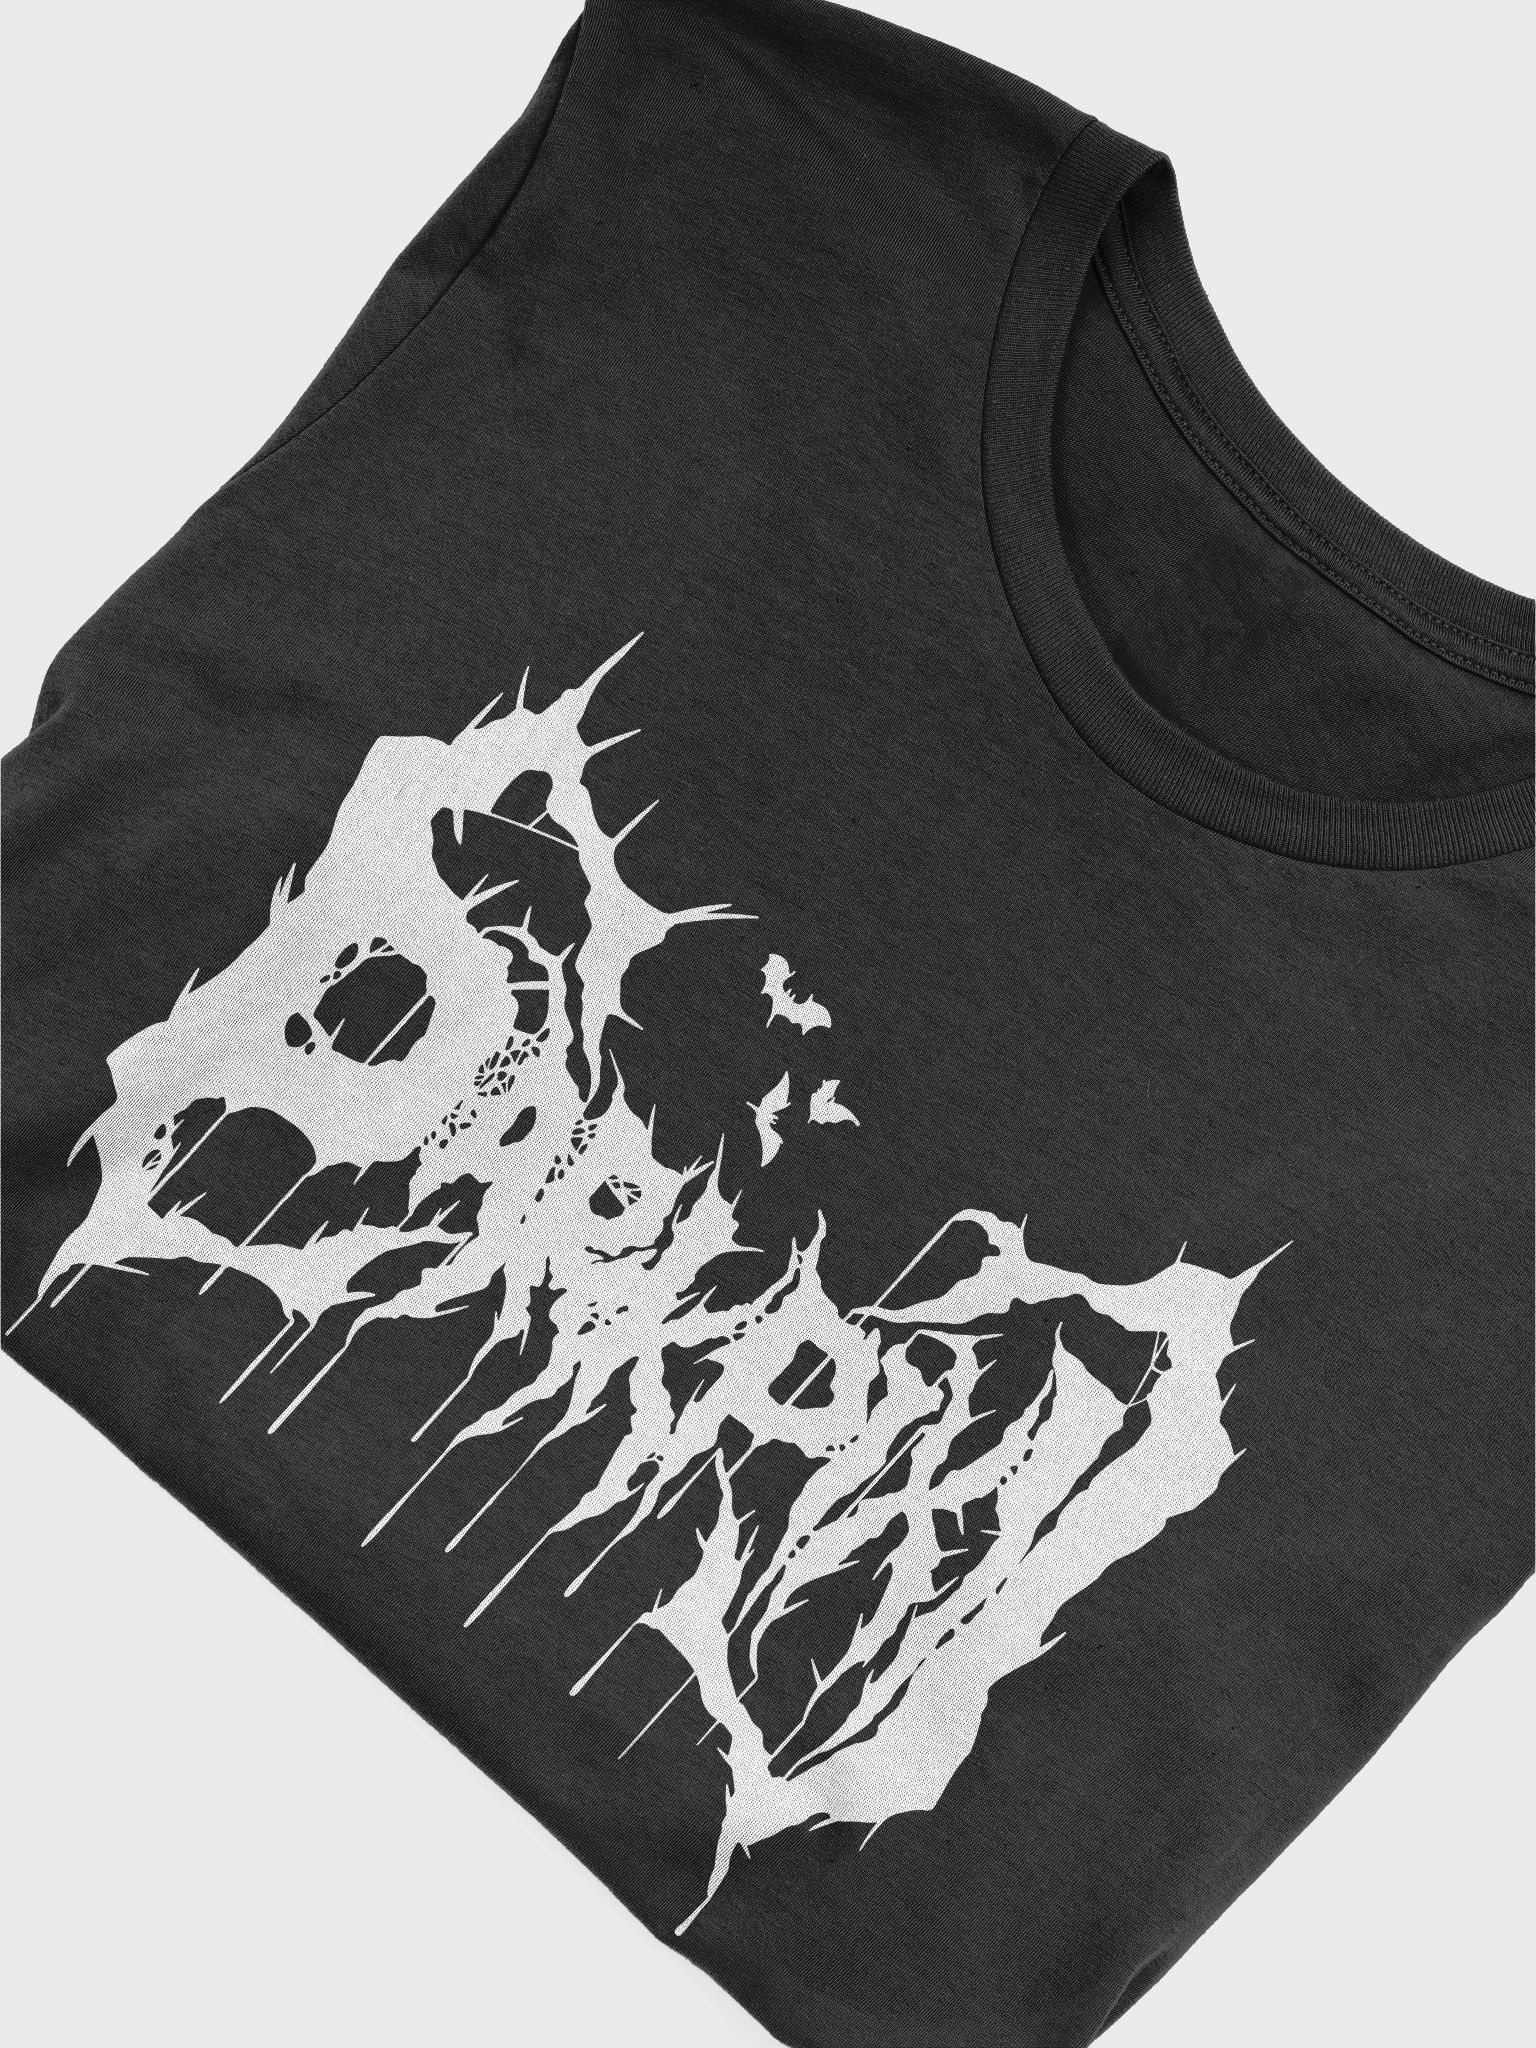 Darkpixi T-Shirt | Darkpixi Cult